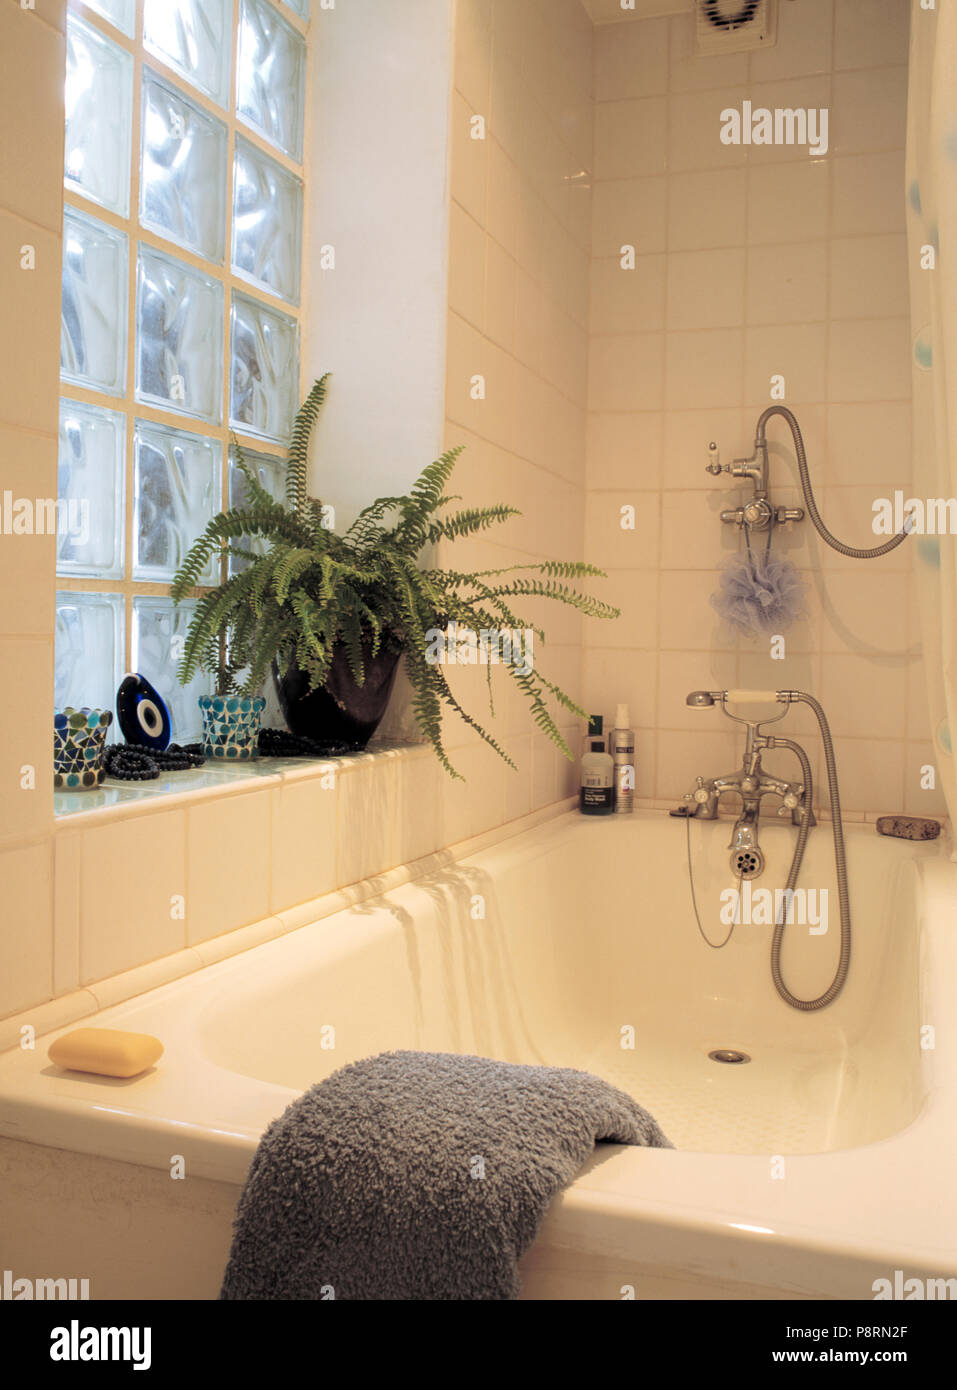 Bagno con doccia cromo in piccolo bagno in piastrelle bianche con Boston fern sul davanzale di seguito mattone di vetro finestra interna Foto Stock